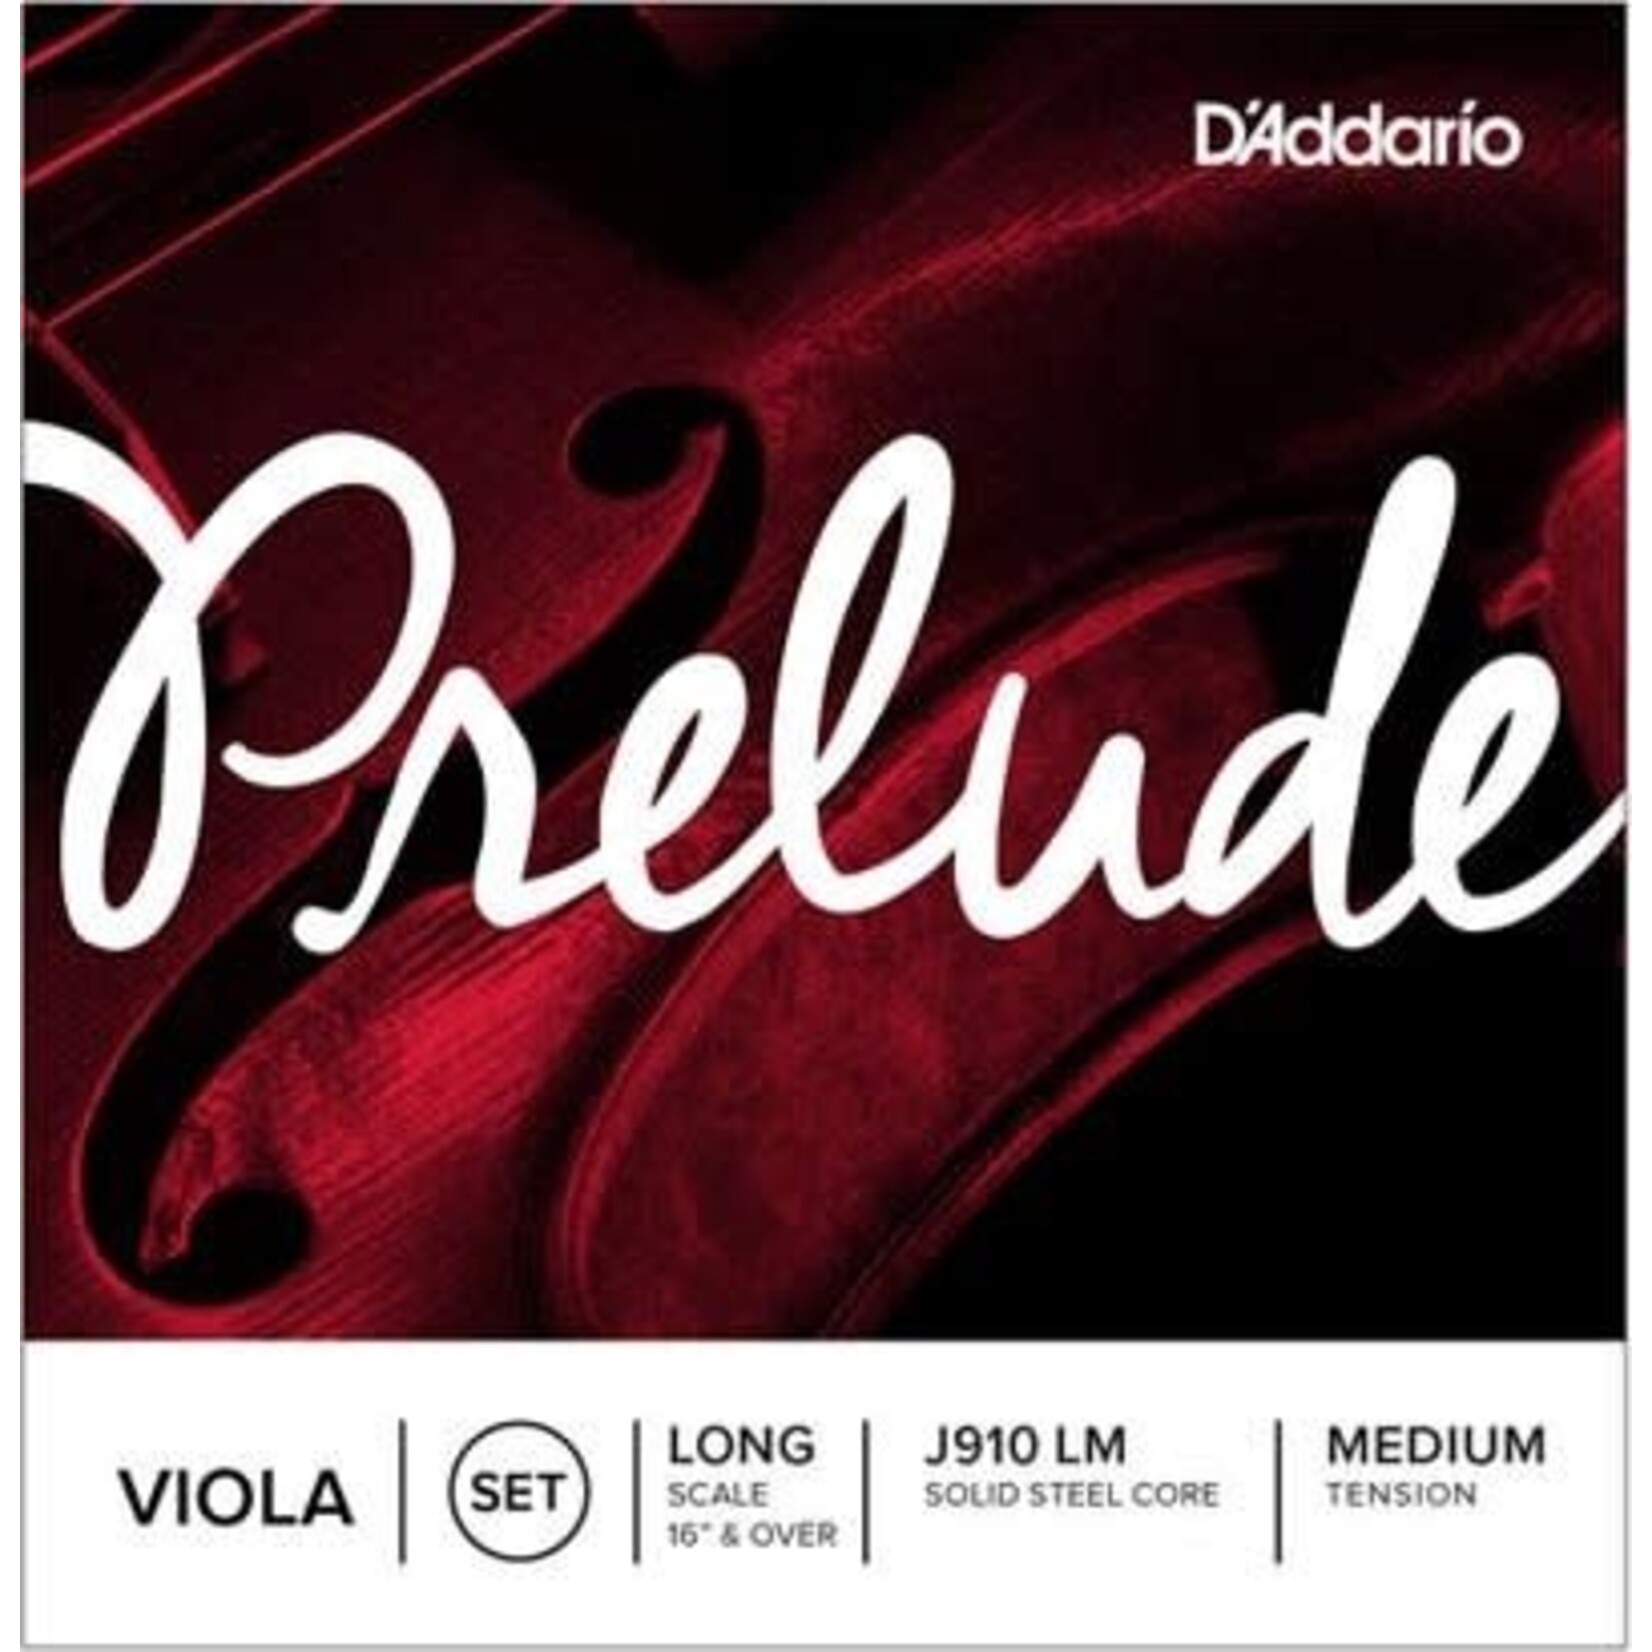 D'Addario D'Addario Prelude Viola J910 LM Long Medium Tension Full Set